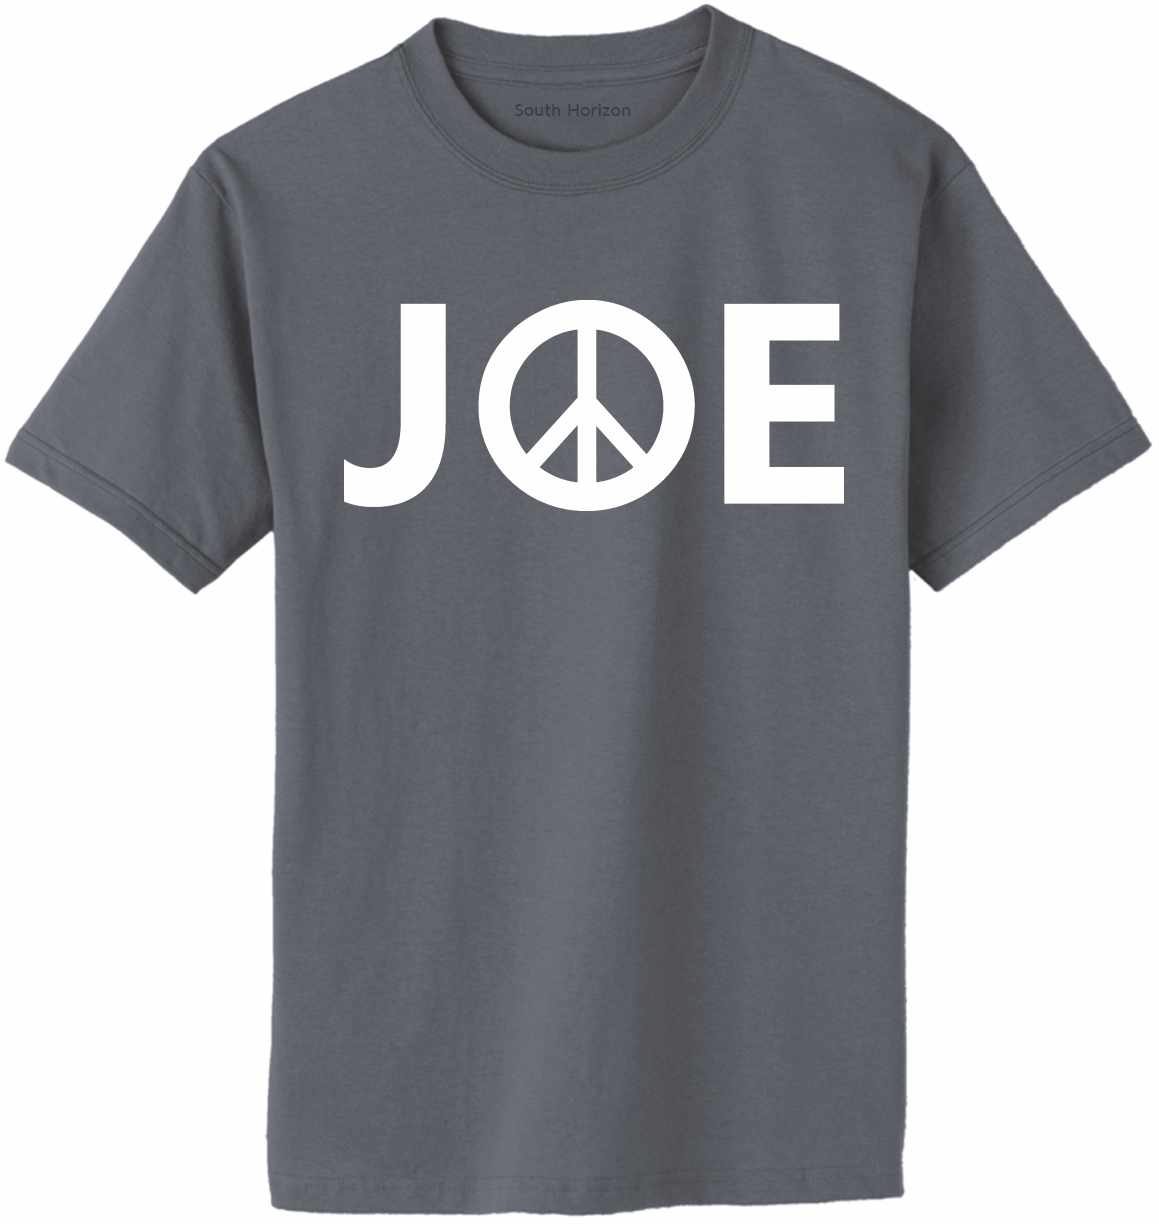 JOE (BIDEN PEACE) Adult T-Shirt (#1166-1)